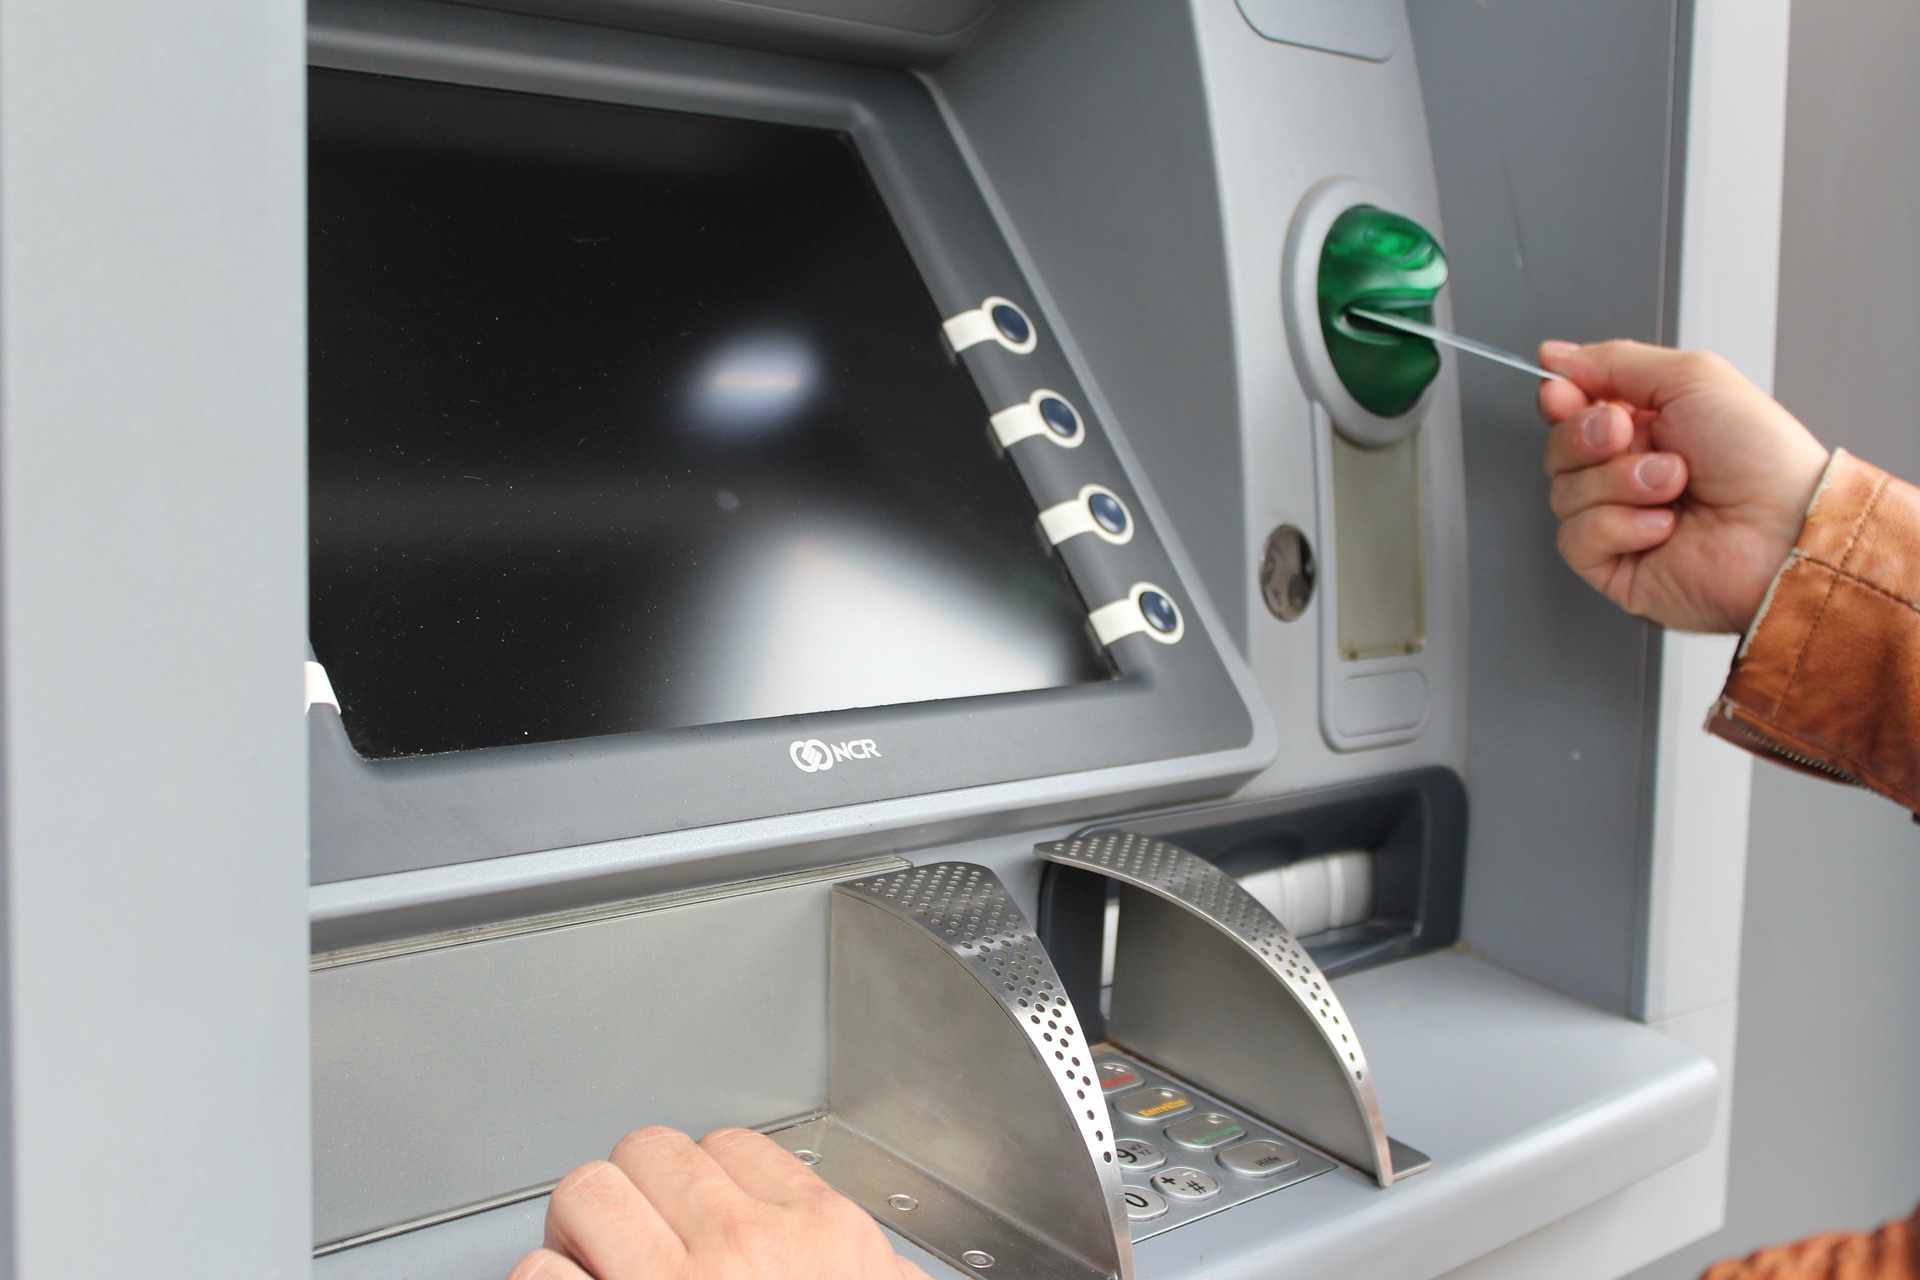 Phí rút tiền ATM khác ngân hàng là bao nhiêu?